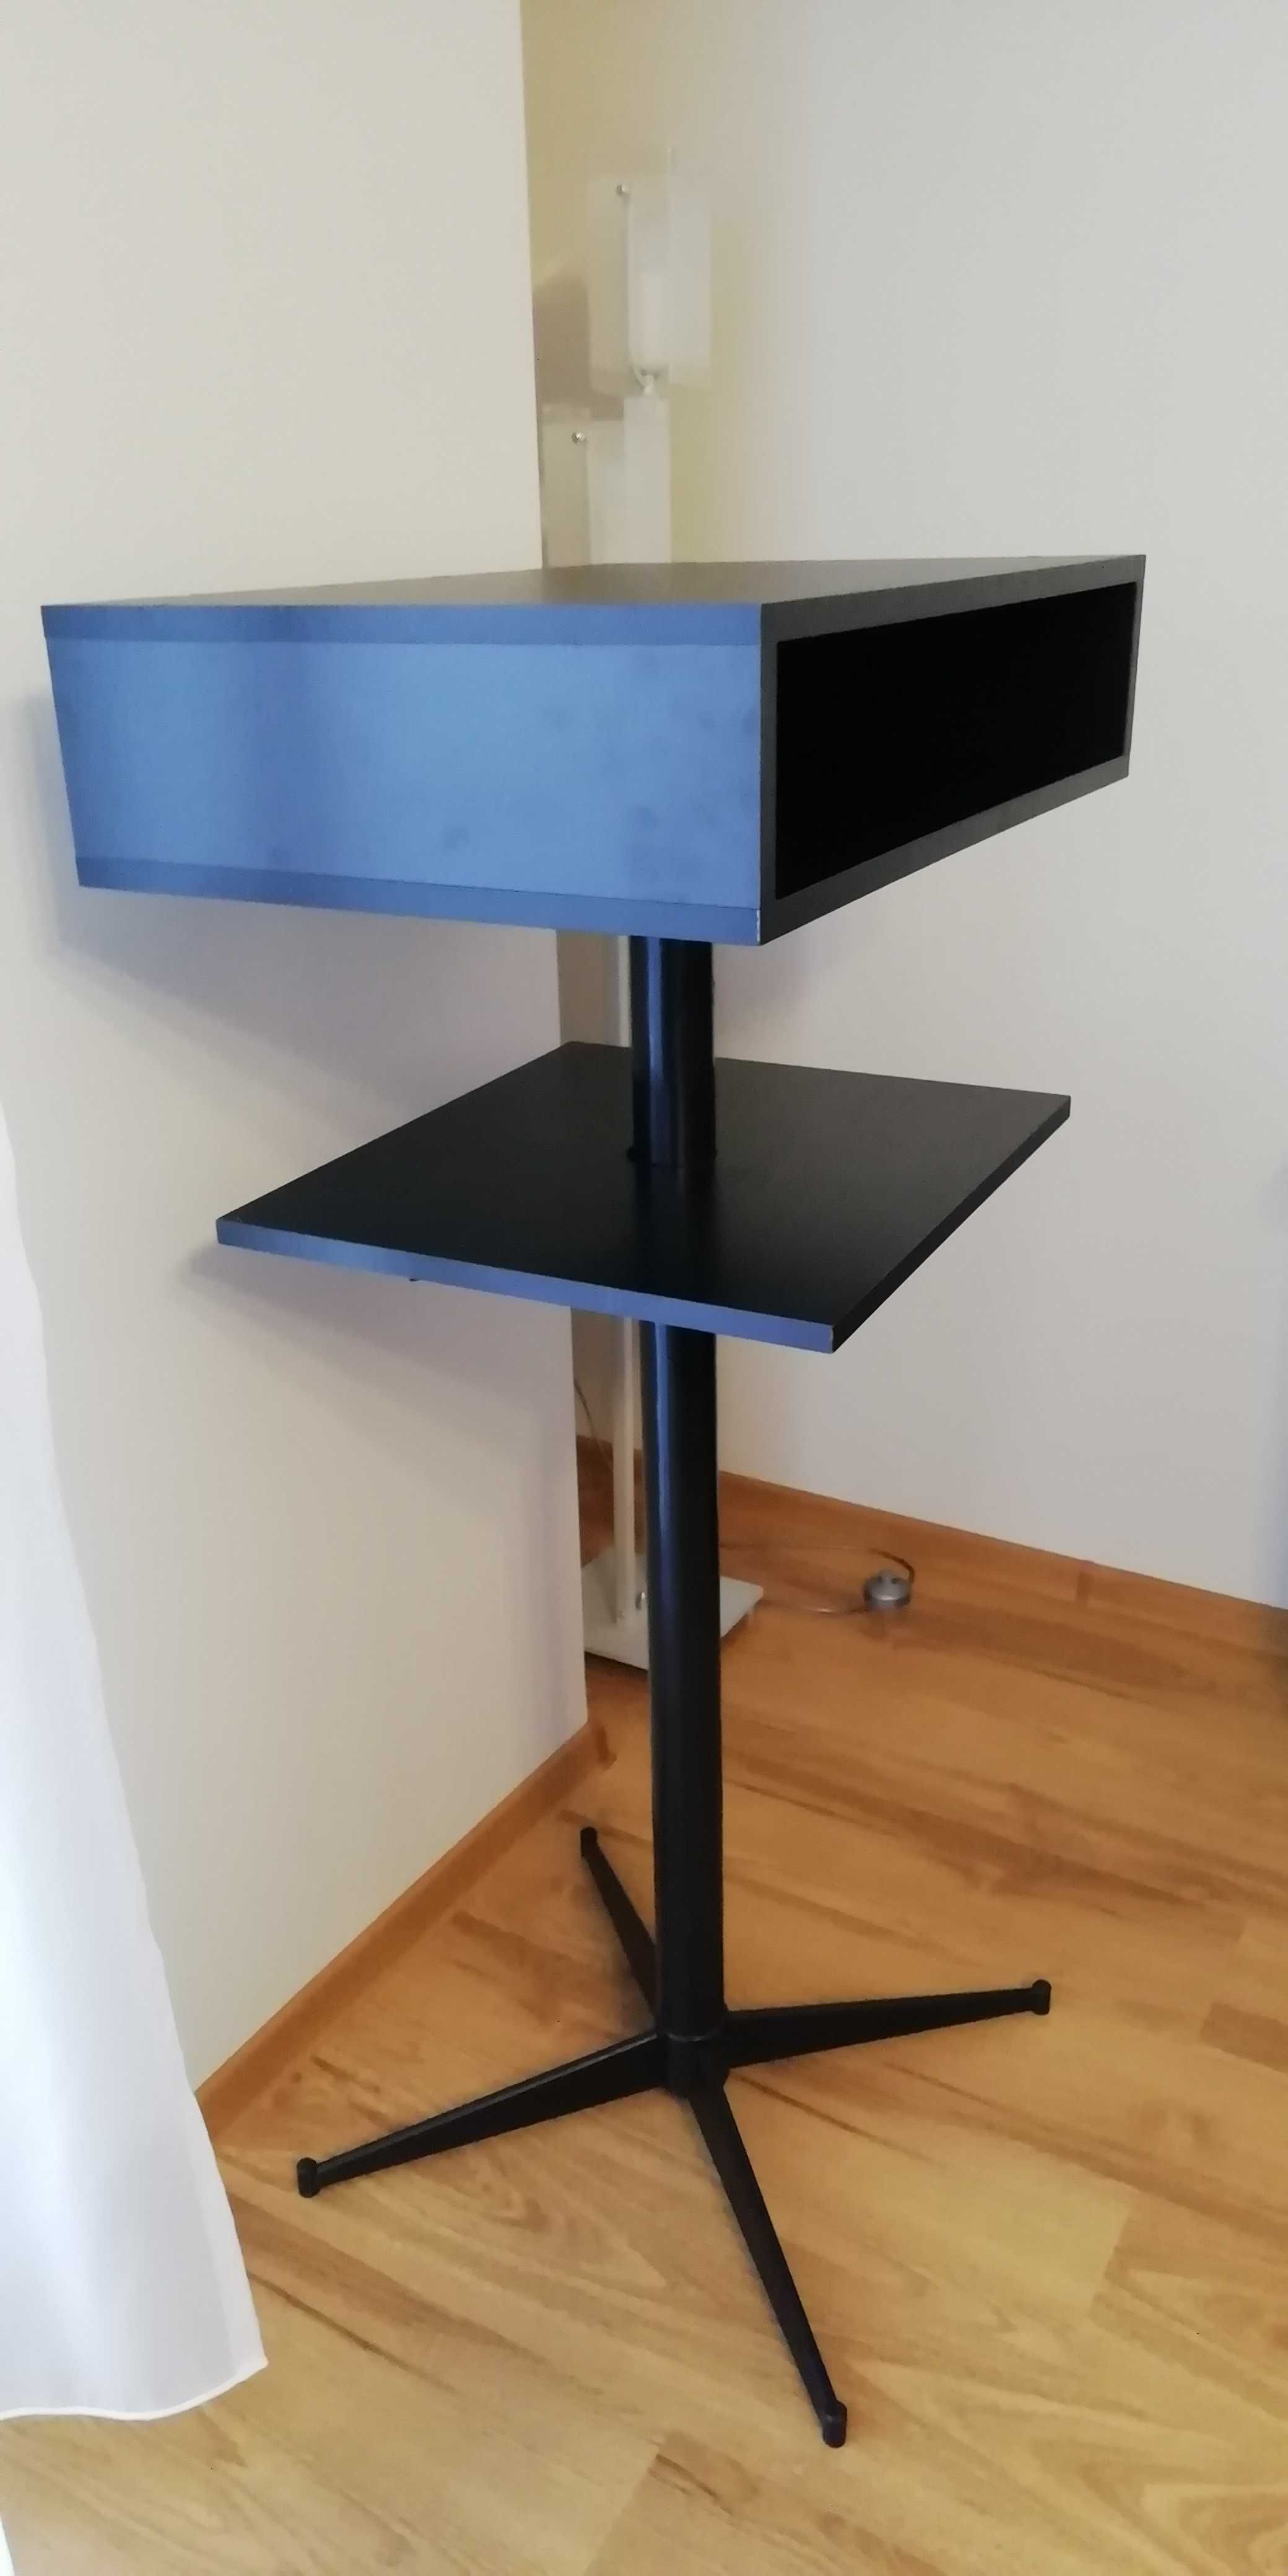 Stojak / stolik pod telewizor - wysoki solidny